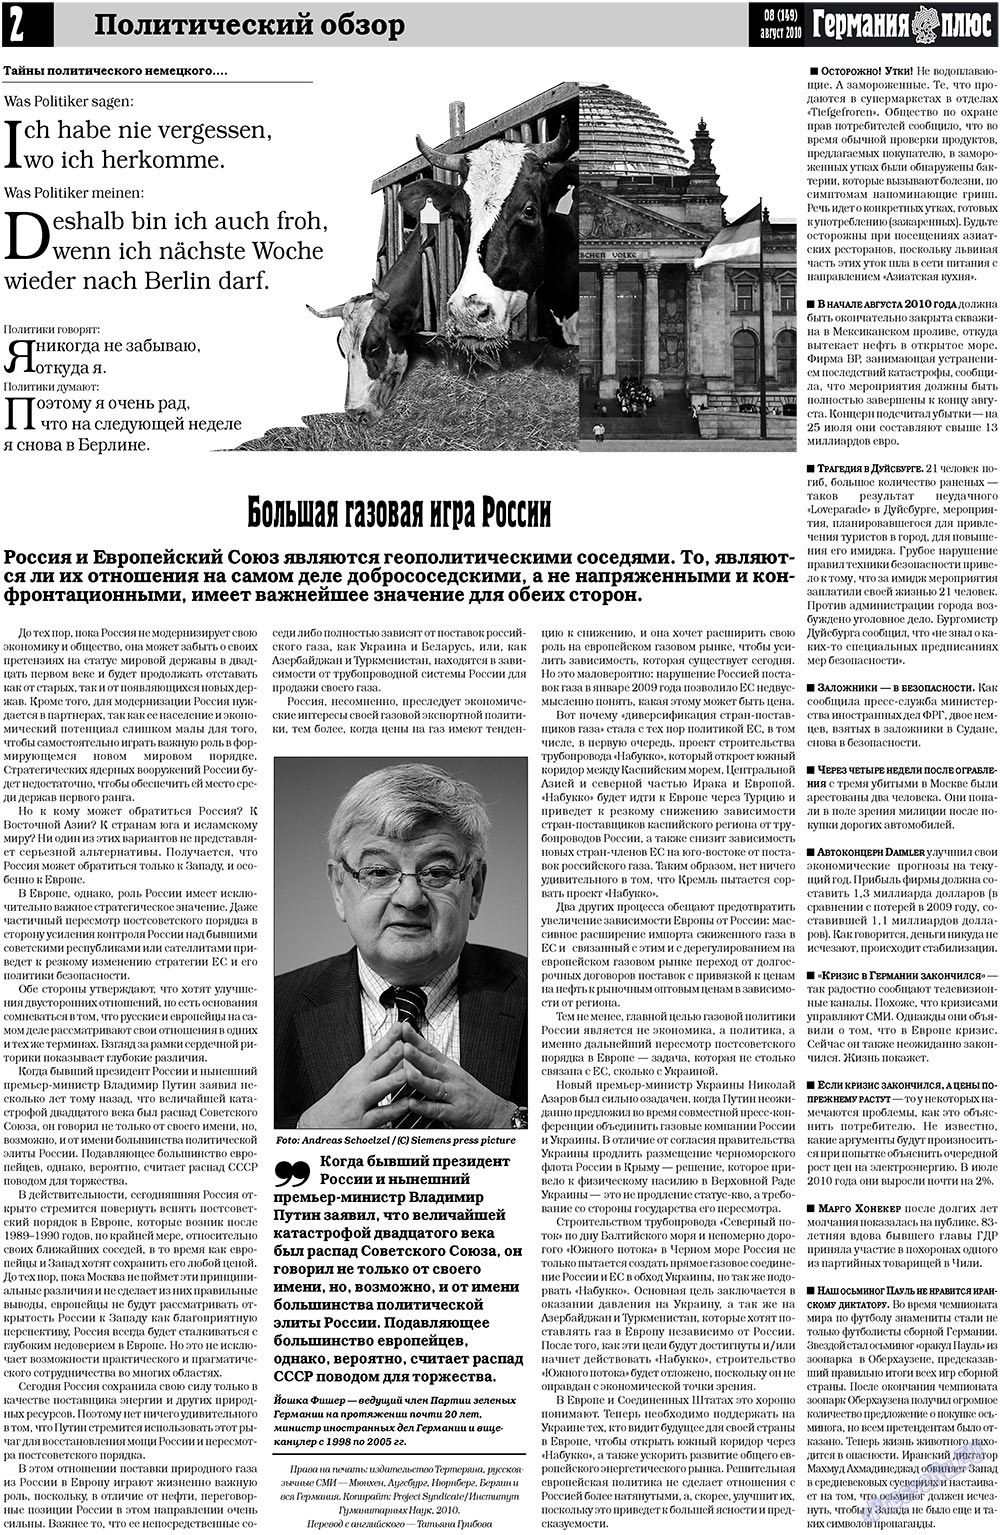 Германия плюс, газета. 2010 №8 стр.2